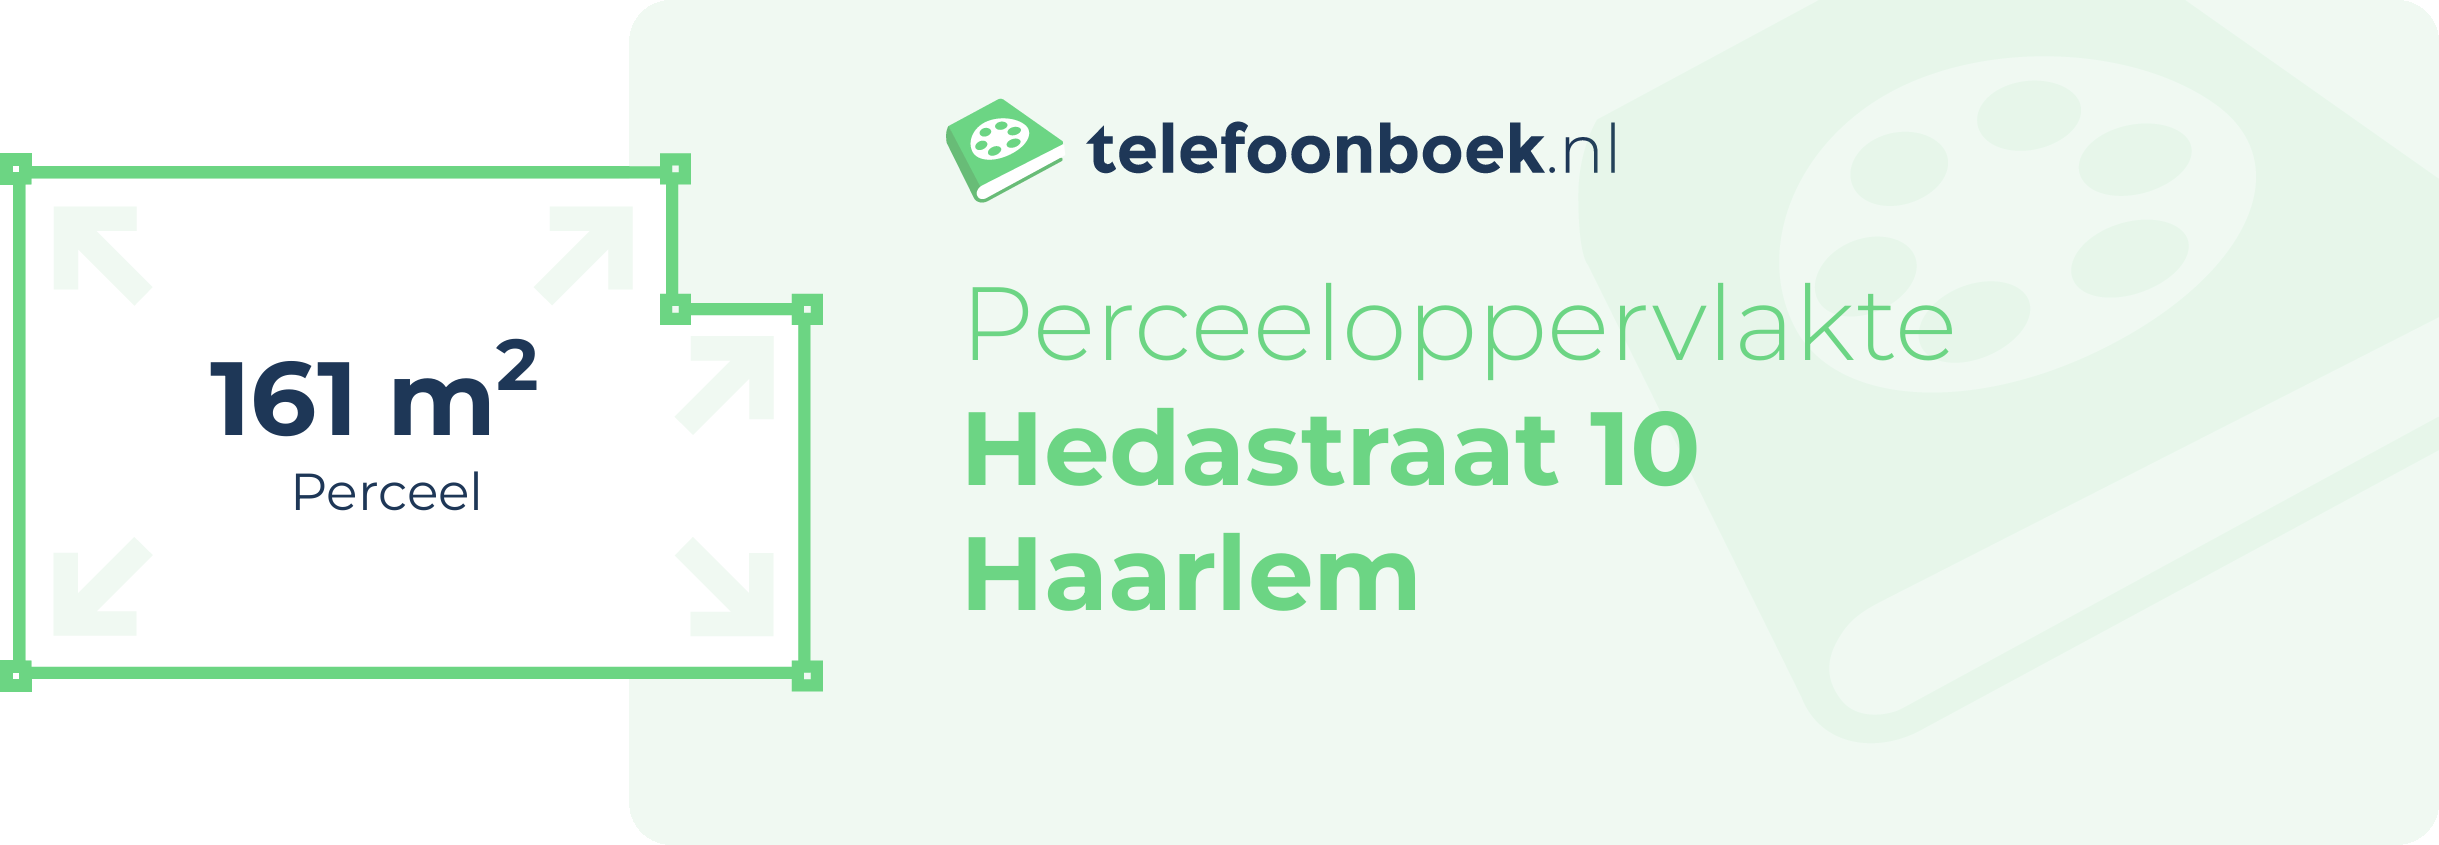 Perceeloppervlakte Hedastraat 10 Haarlem